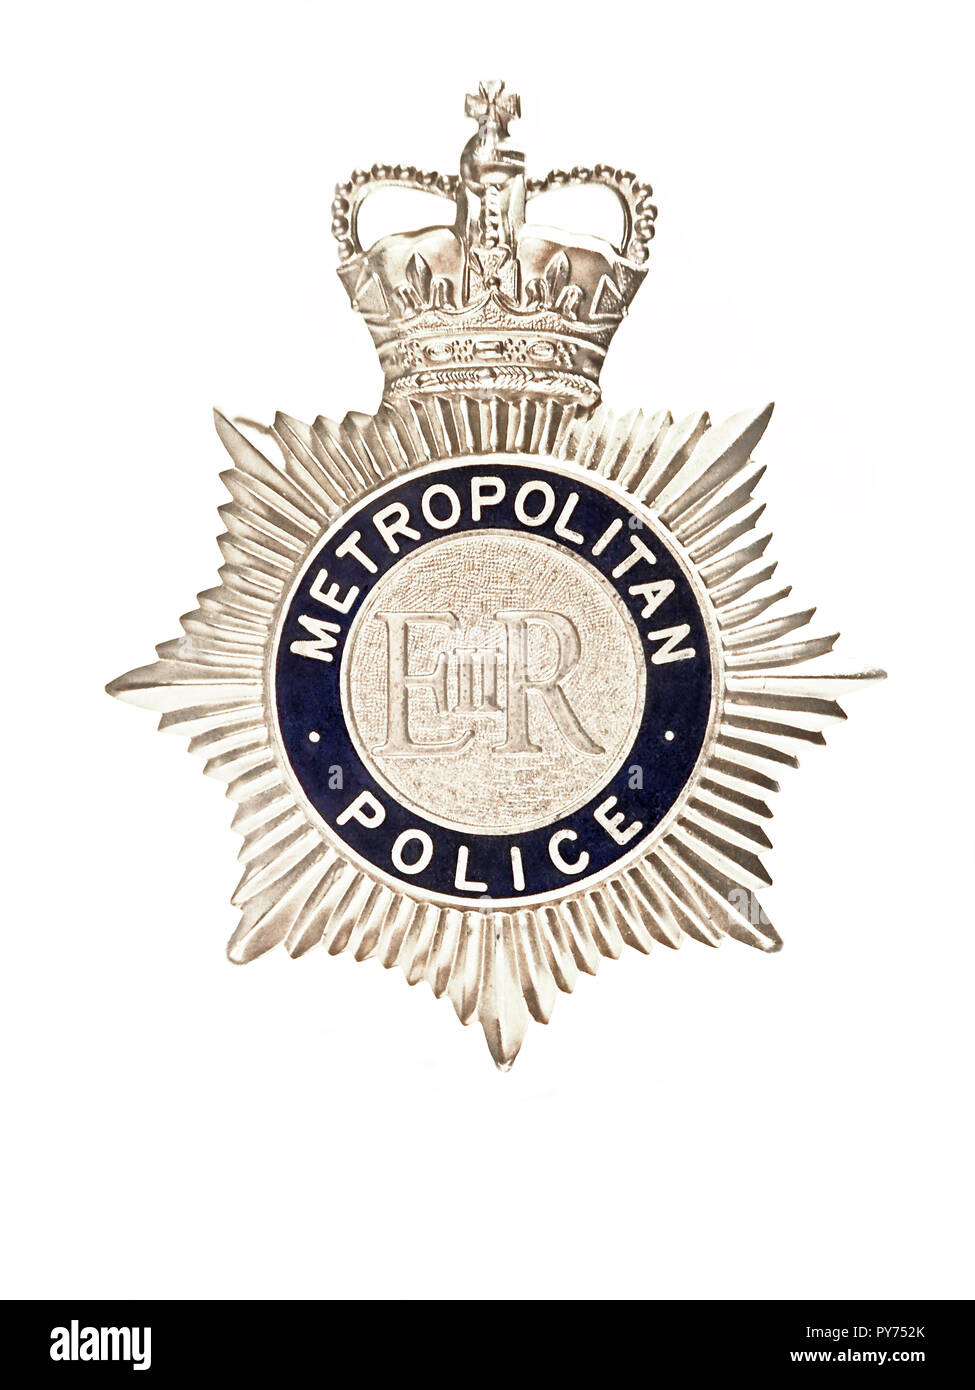 Metropolitan police badge Stock Photo